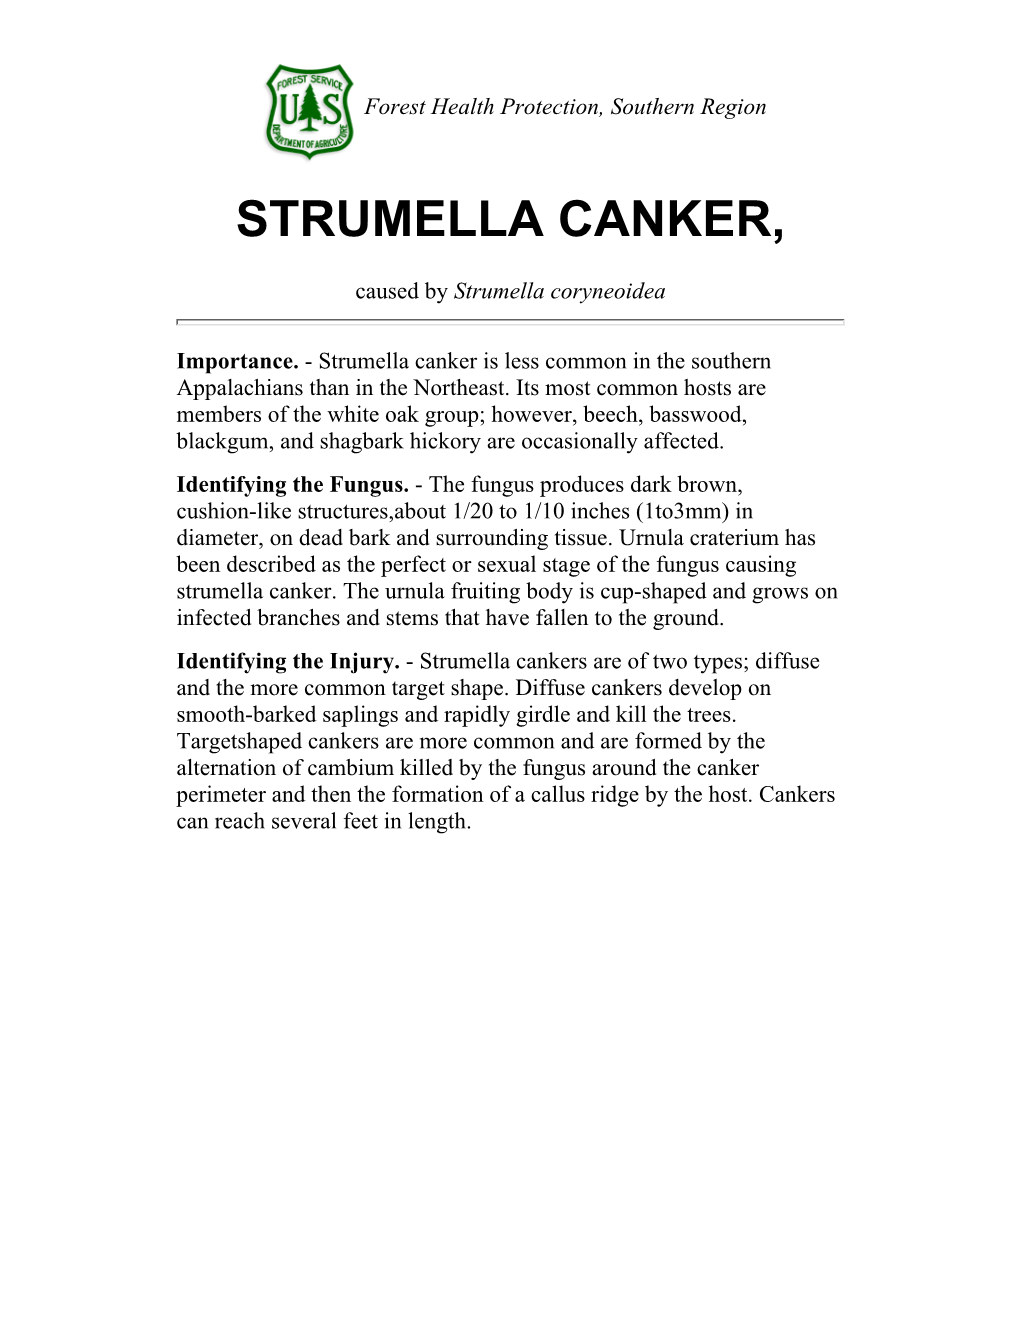 Strumella Canker